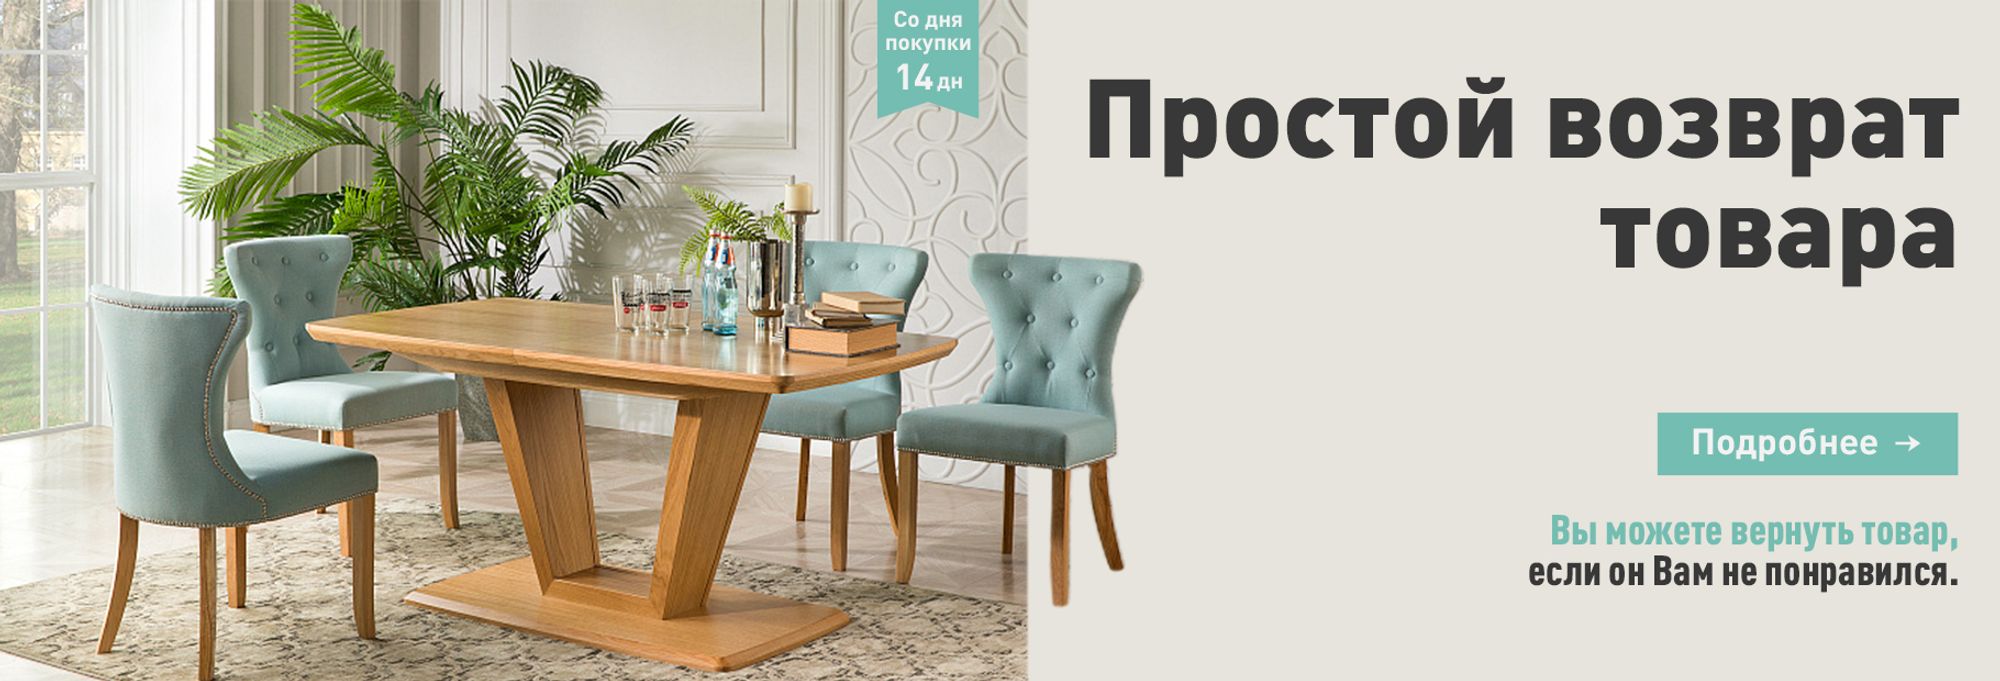 Интерьер и декор купить в Минске с ценами в интернет-магазине недорого